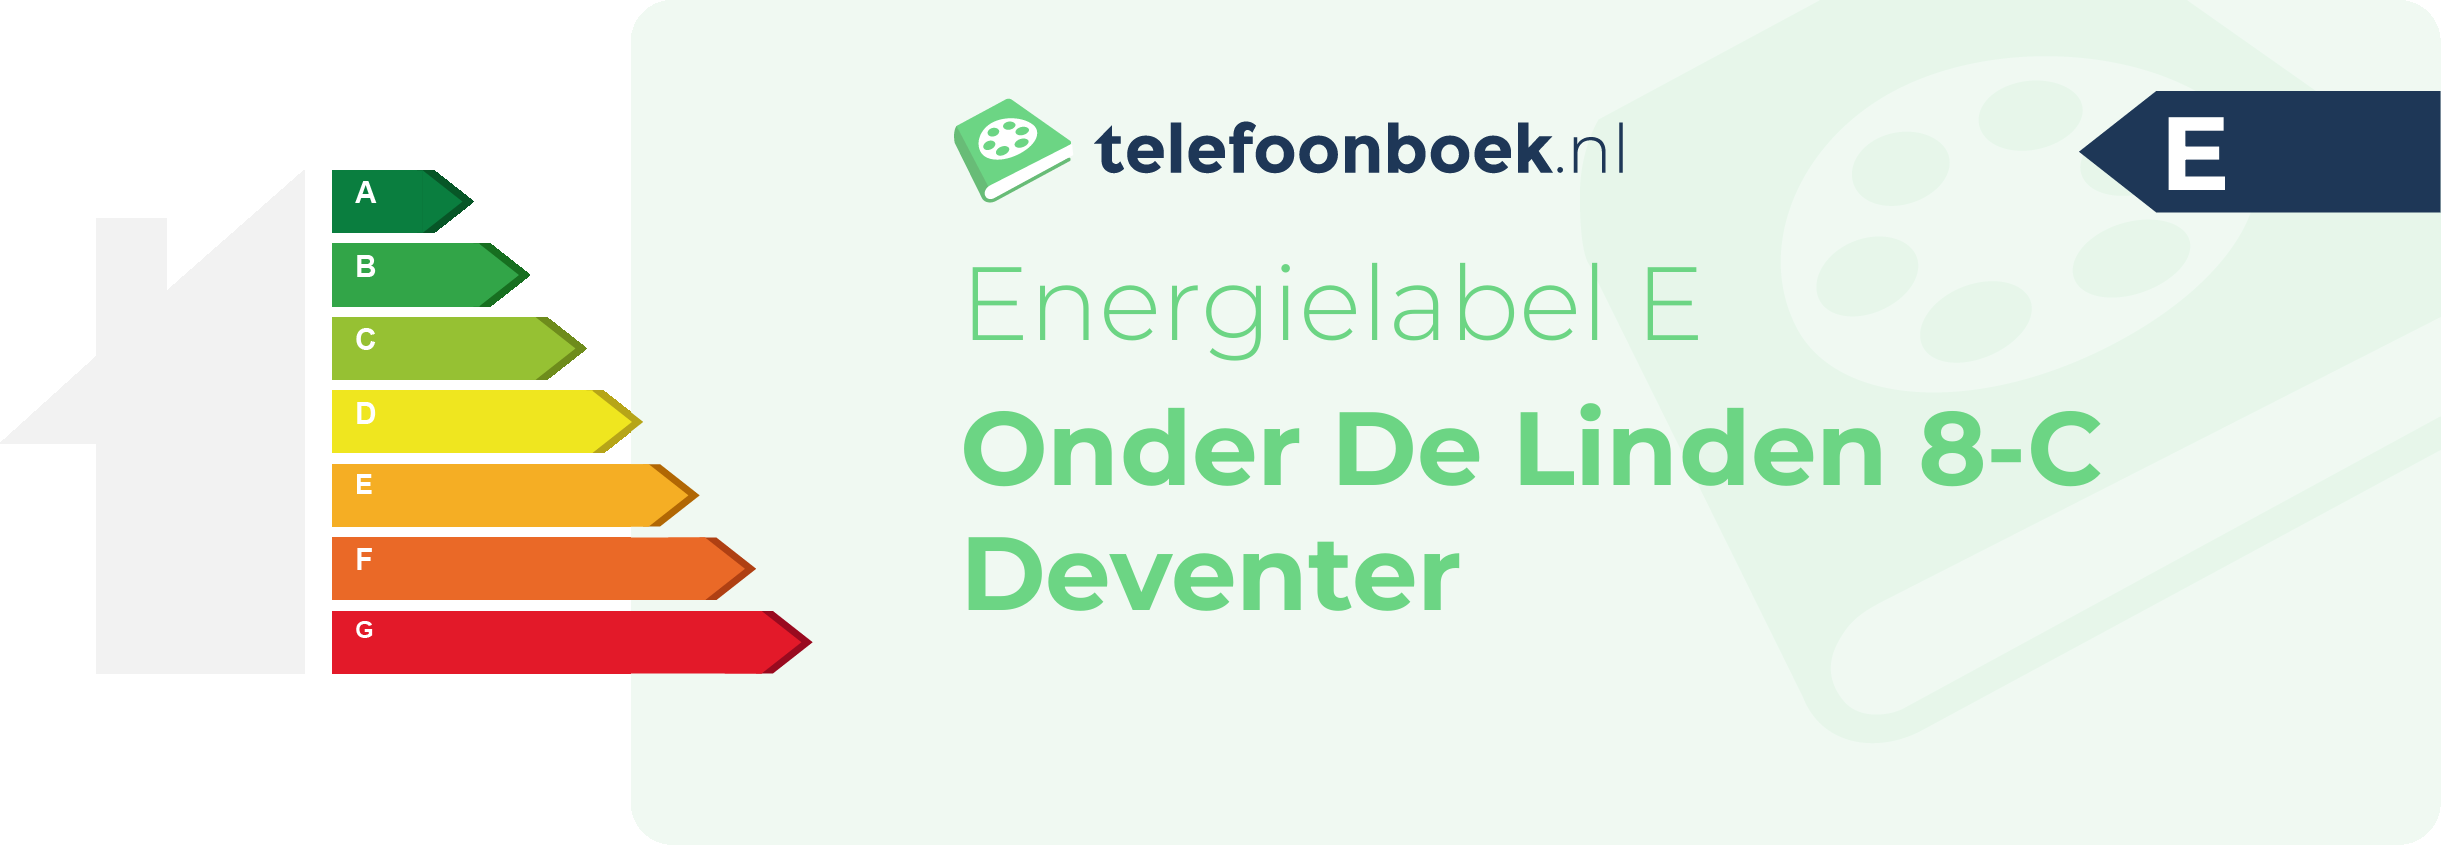 Energielabel Onder De Linden 8-C Deventer